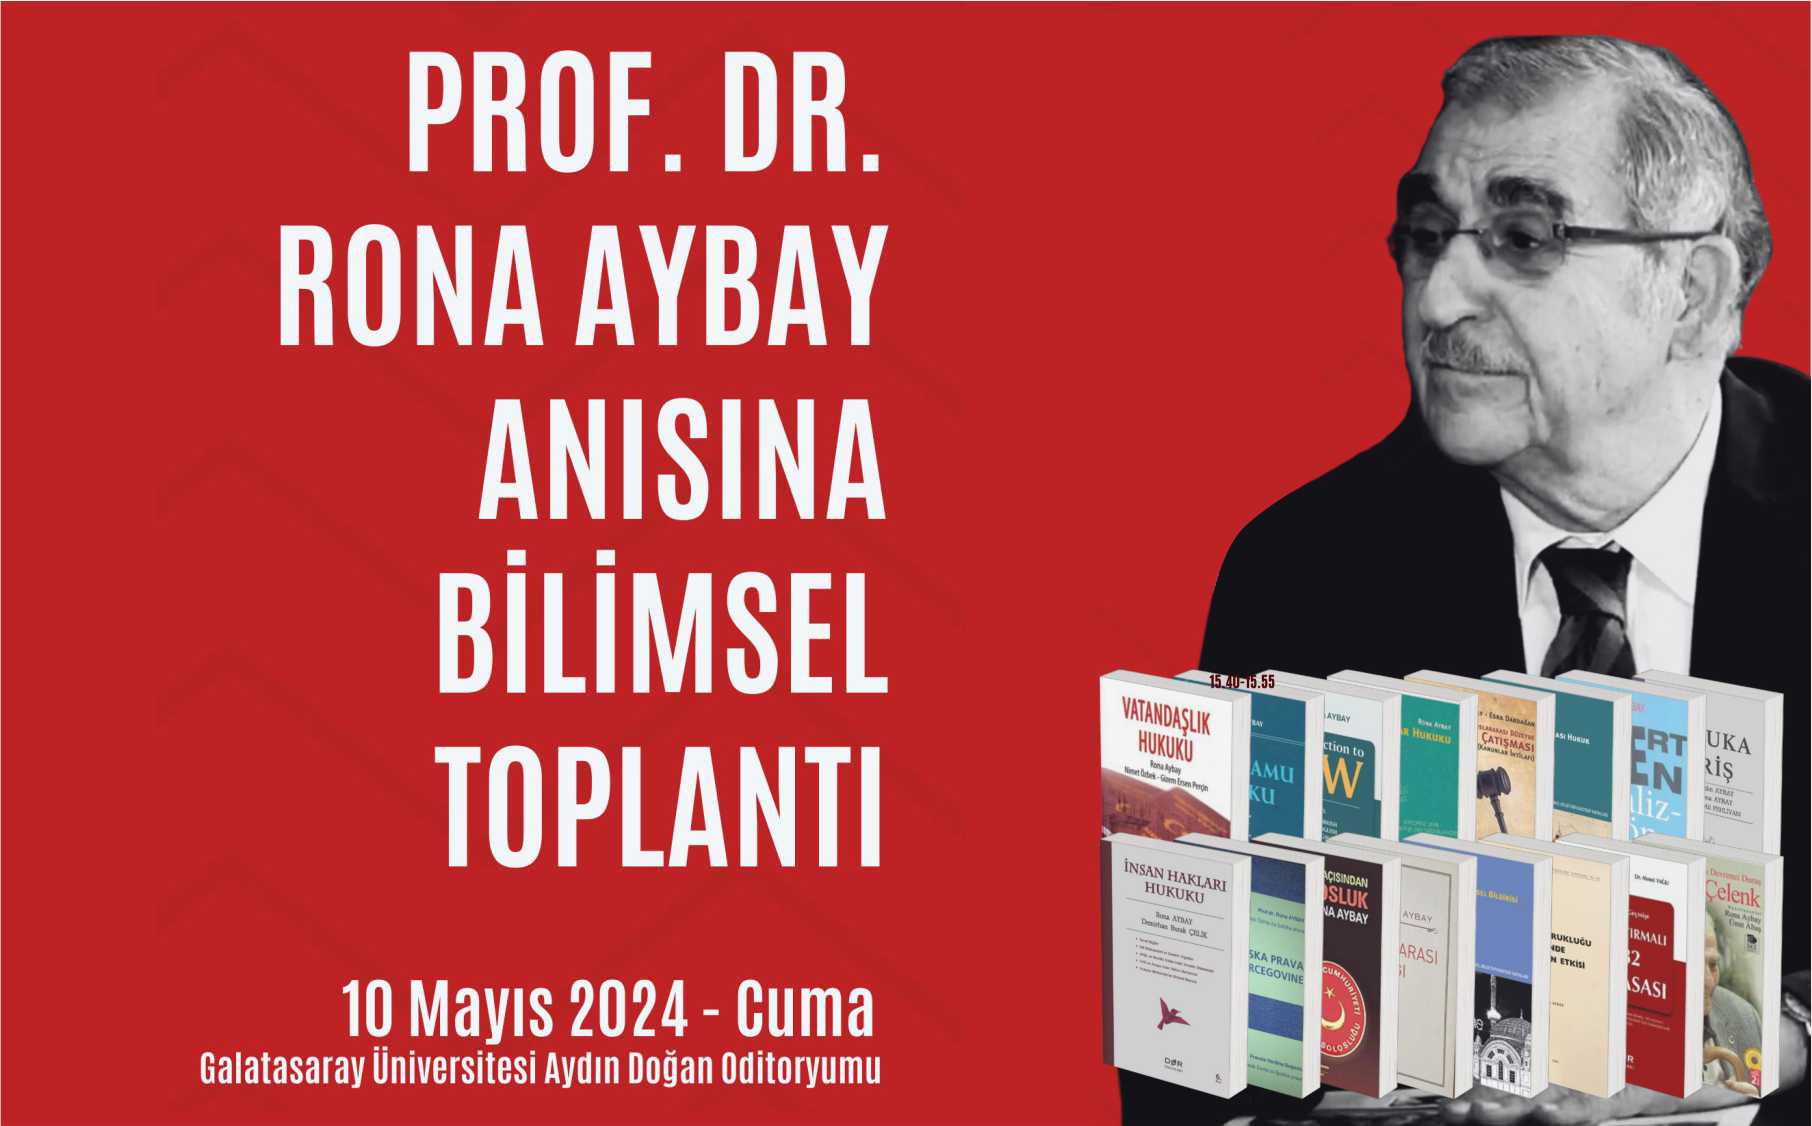 "Prof. Dr. Rona Aybay Anısına Bilimsel Toplantı: 1924 Anayasası'nın 100. Yılında Türkiye'de Vatandaşlık ve İnsan Hakları duyuru görseli